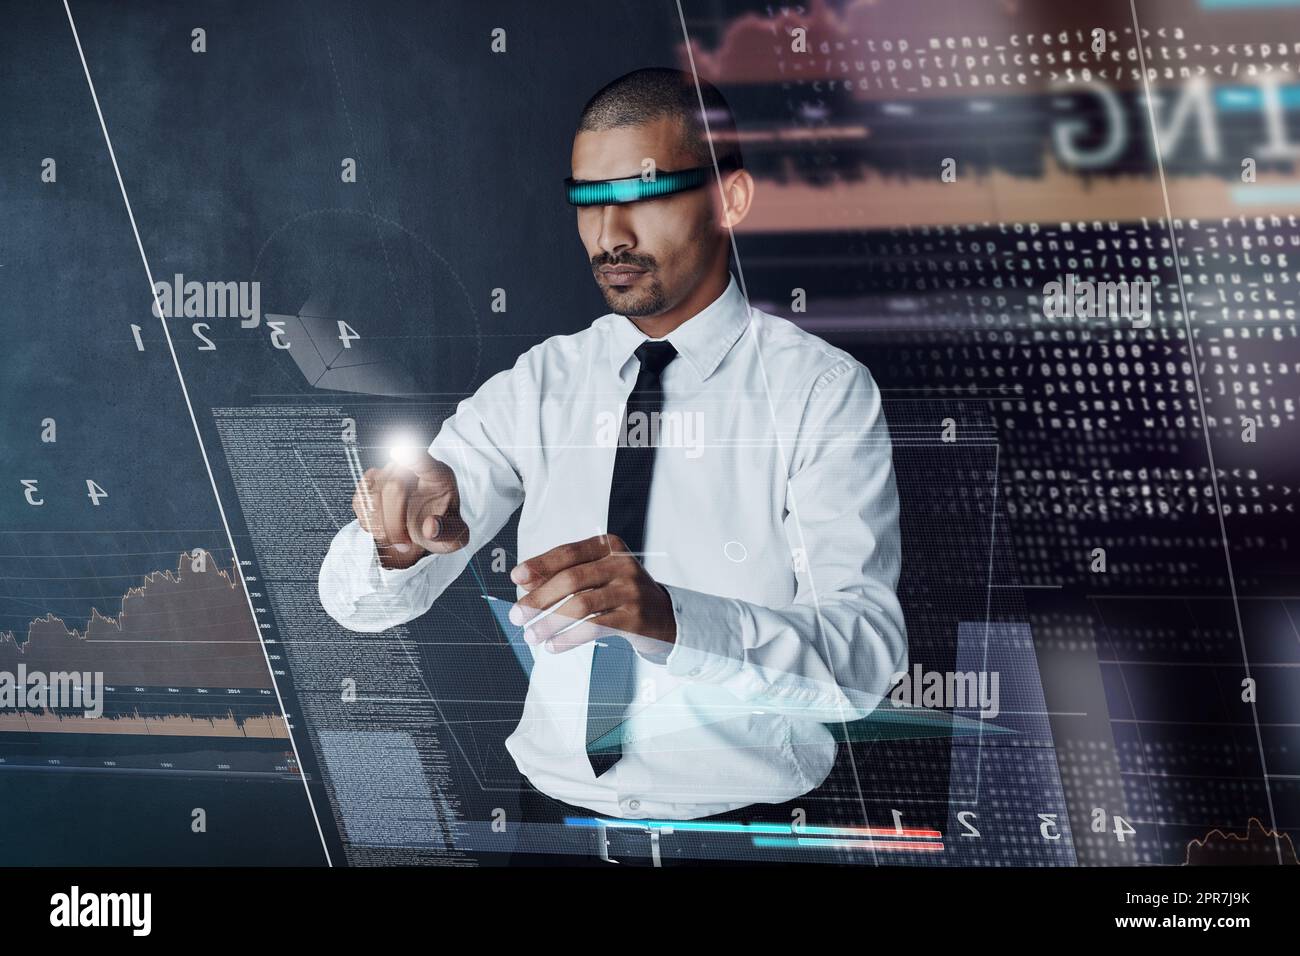 Den Möglichkeiten der Technologie ist kein Ende gesetzt: Ein hübscher junger Geschäftsmann, der eine digitale Schnittstelle nutzt. Stockfoto